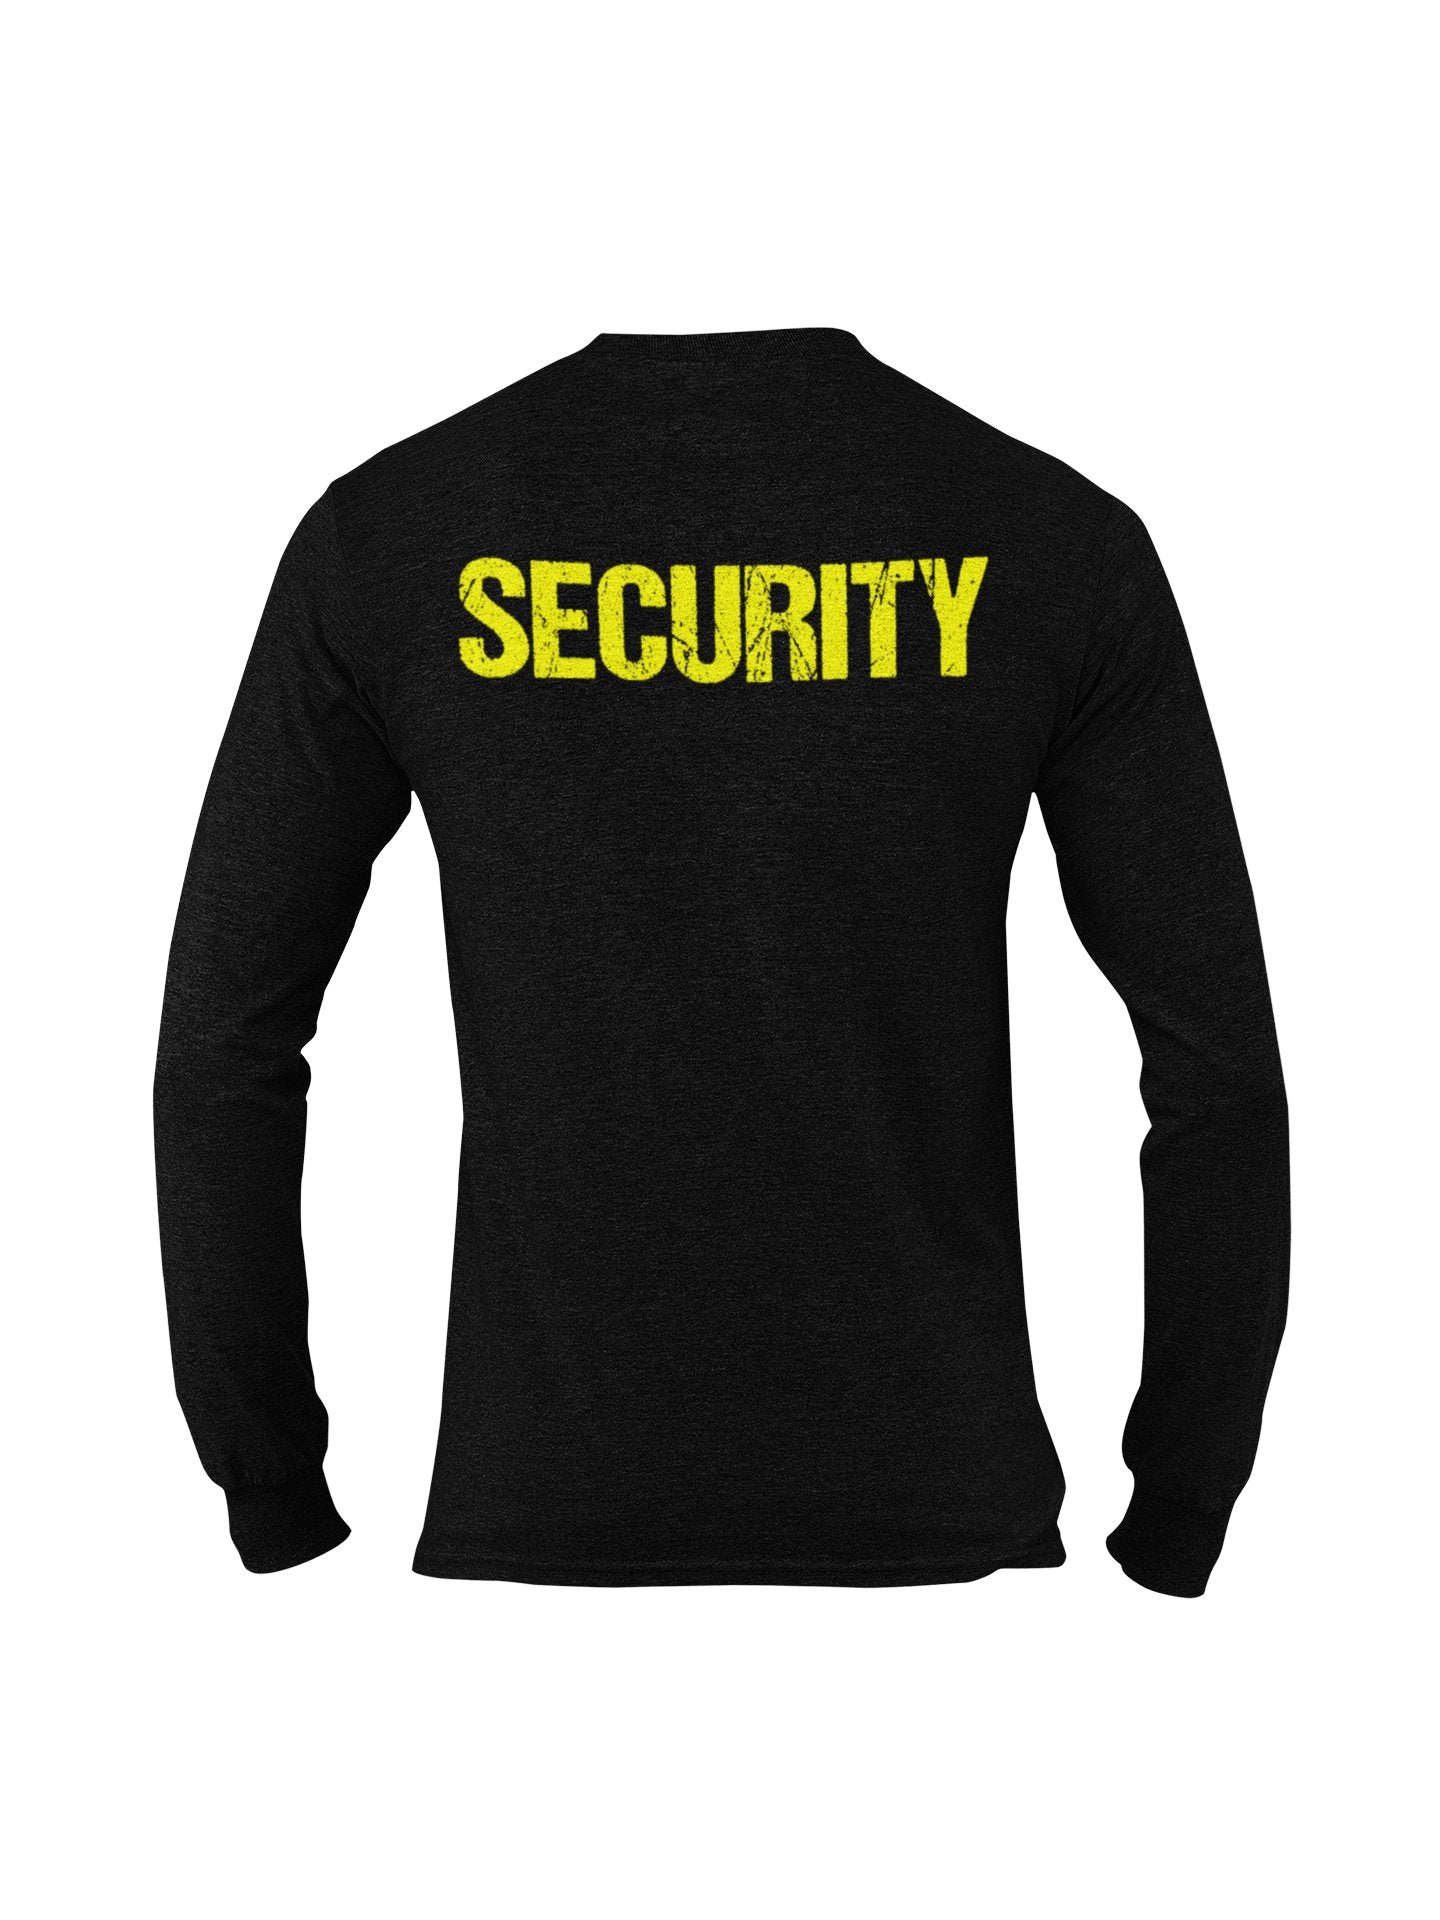 T-shirt à manches longues Security pour hommes (motif vieilli, noir et néon)